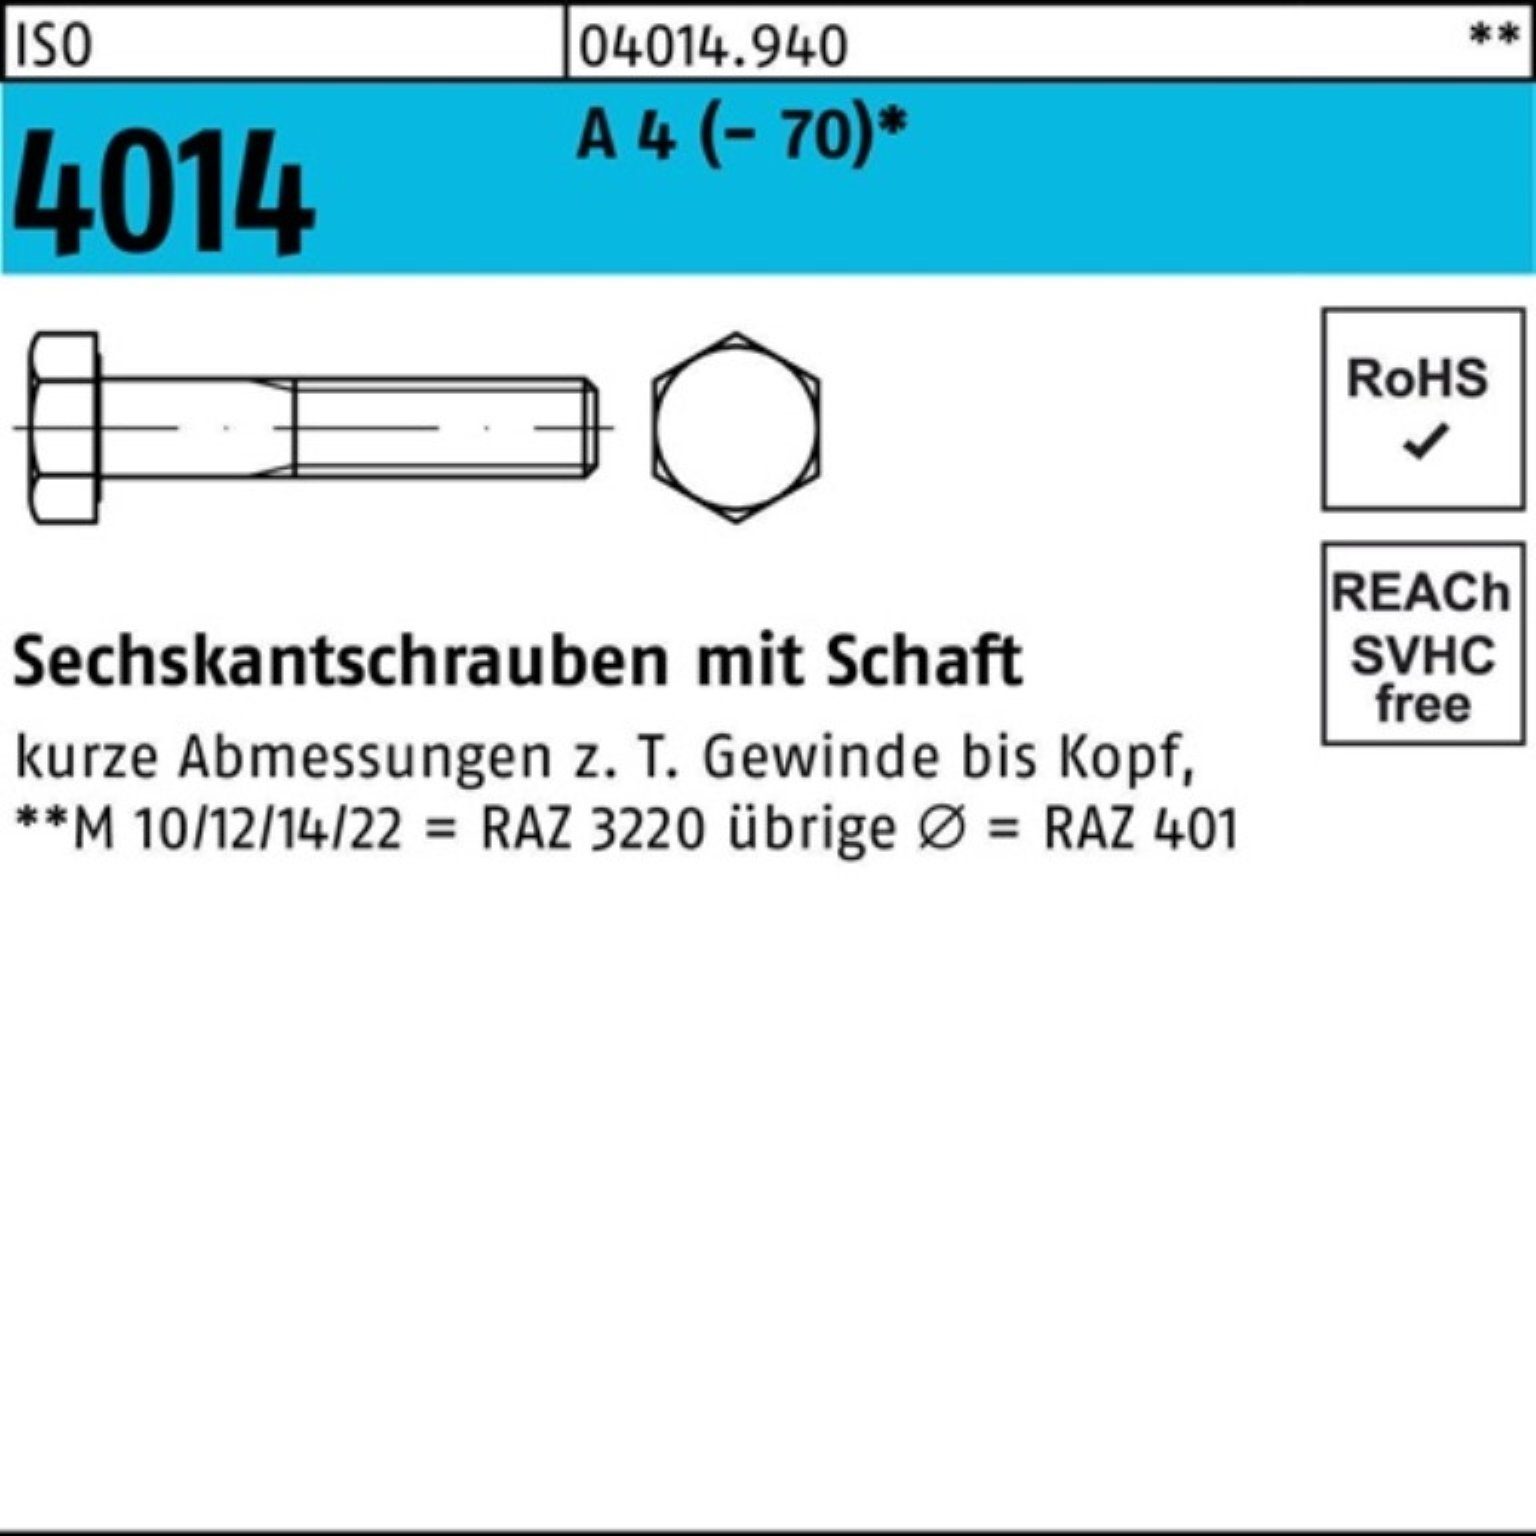 Bufab Sechskantschraube 4 Schaft A 100er 150 Stück Pack M33x 4014 ISO Sechskantschraube 1 ISO